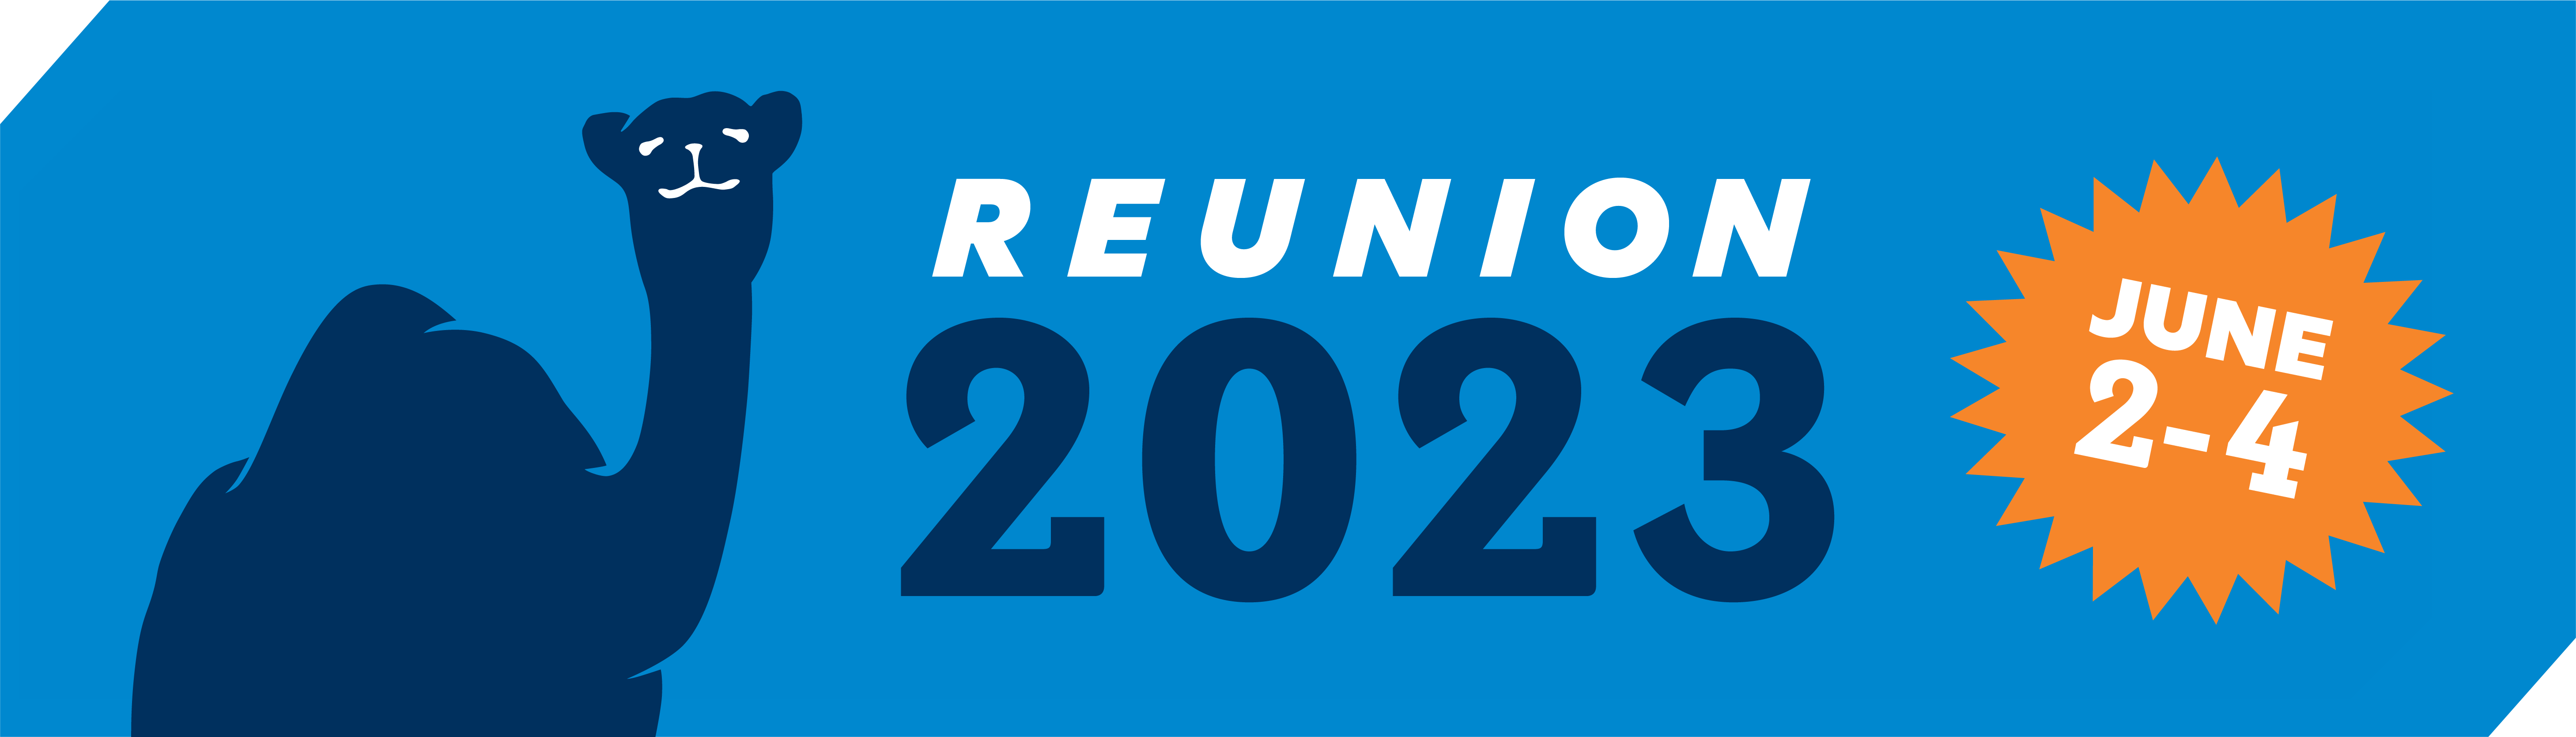 reunion 2023 2-4 banner